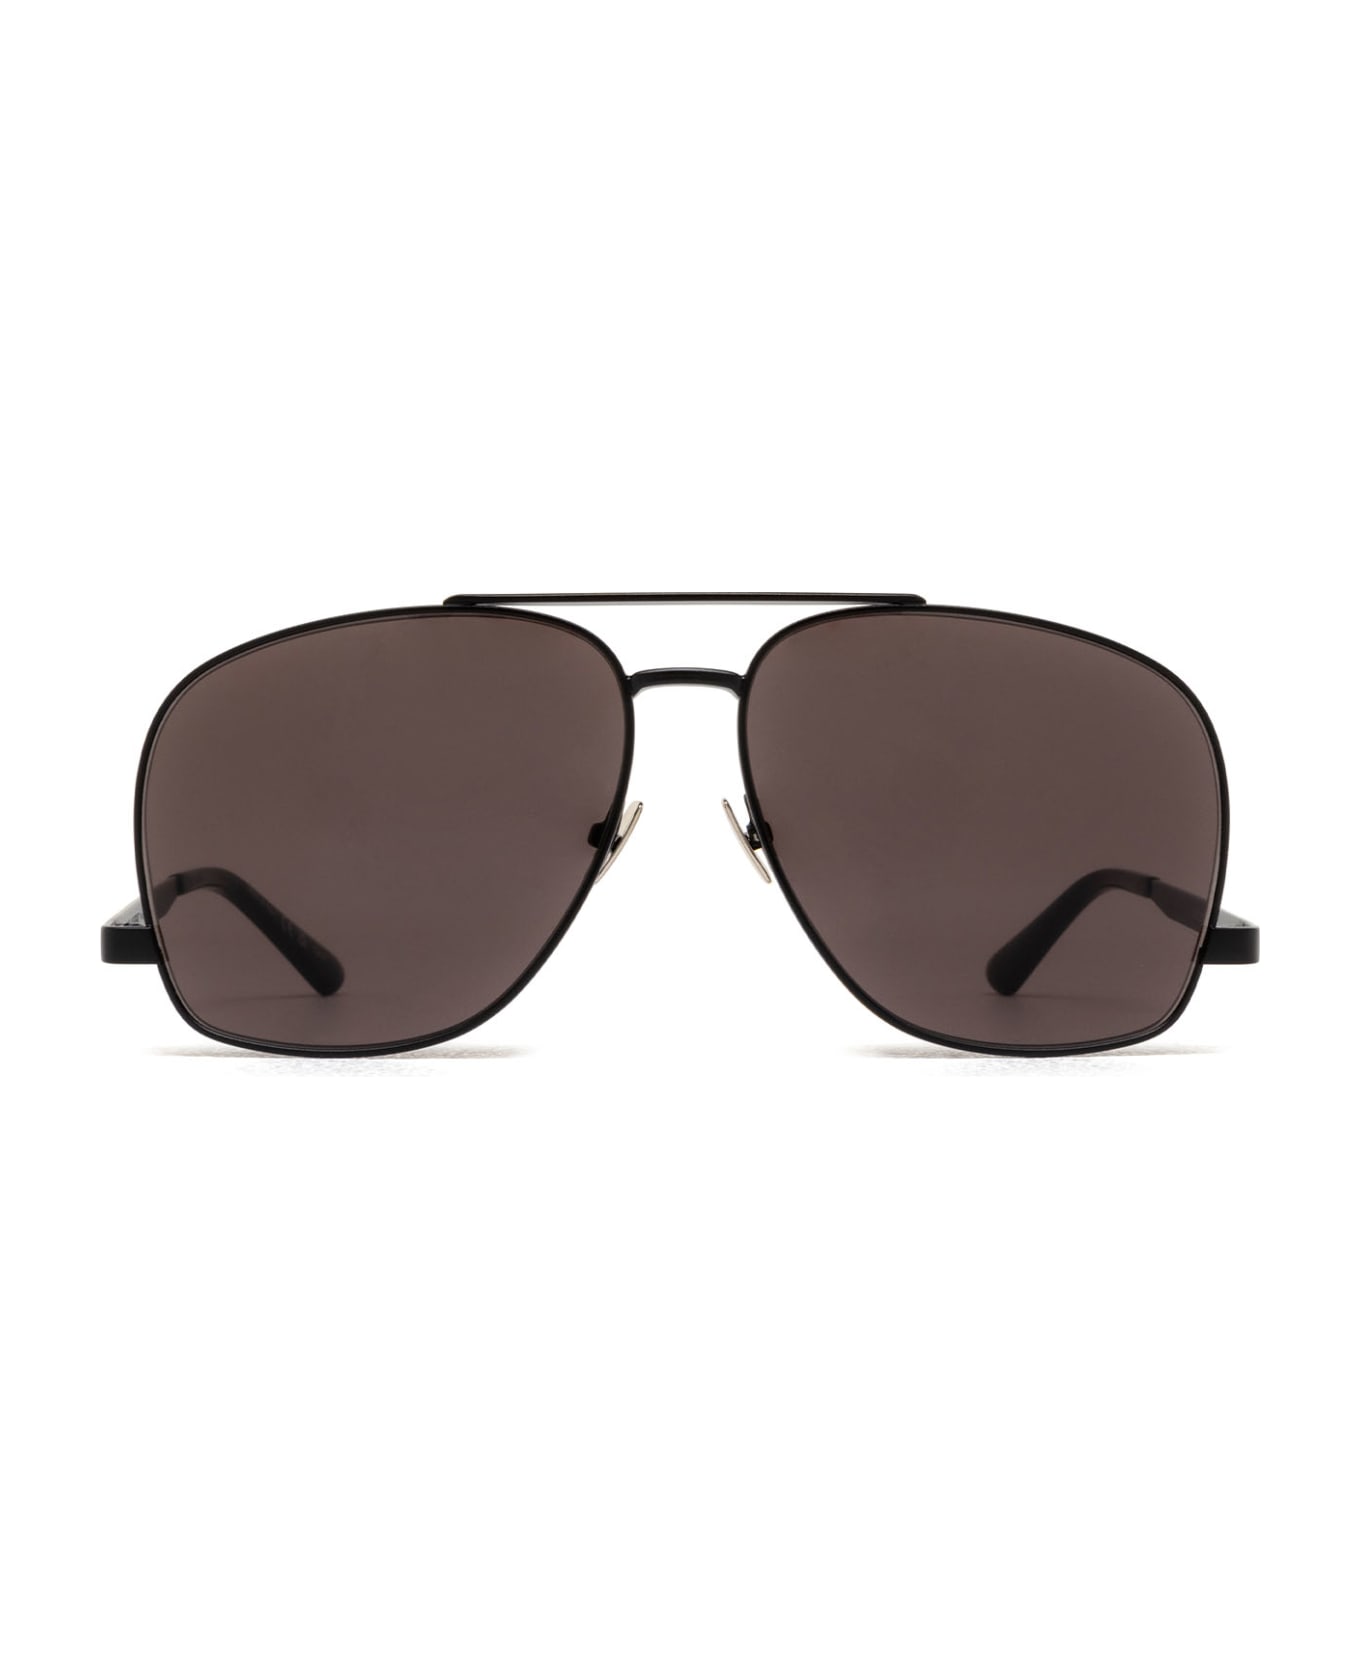 Saint Laurent Eyewear Sl 653 Black Sunglasses - Black